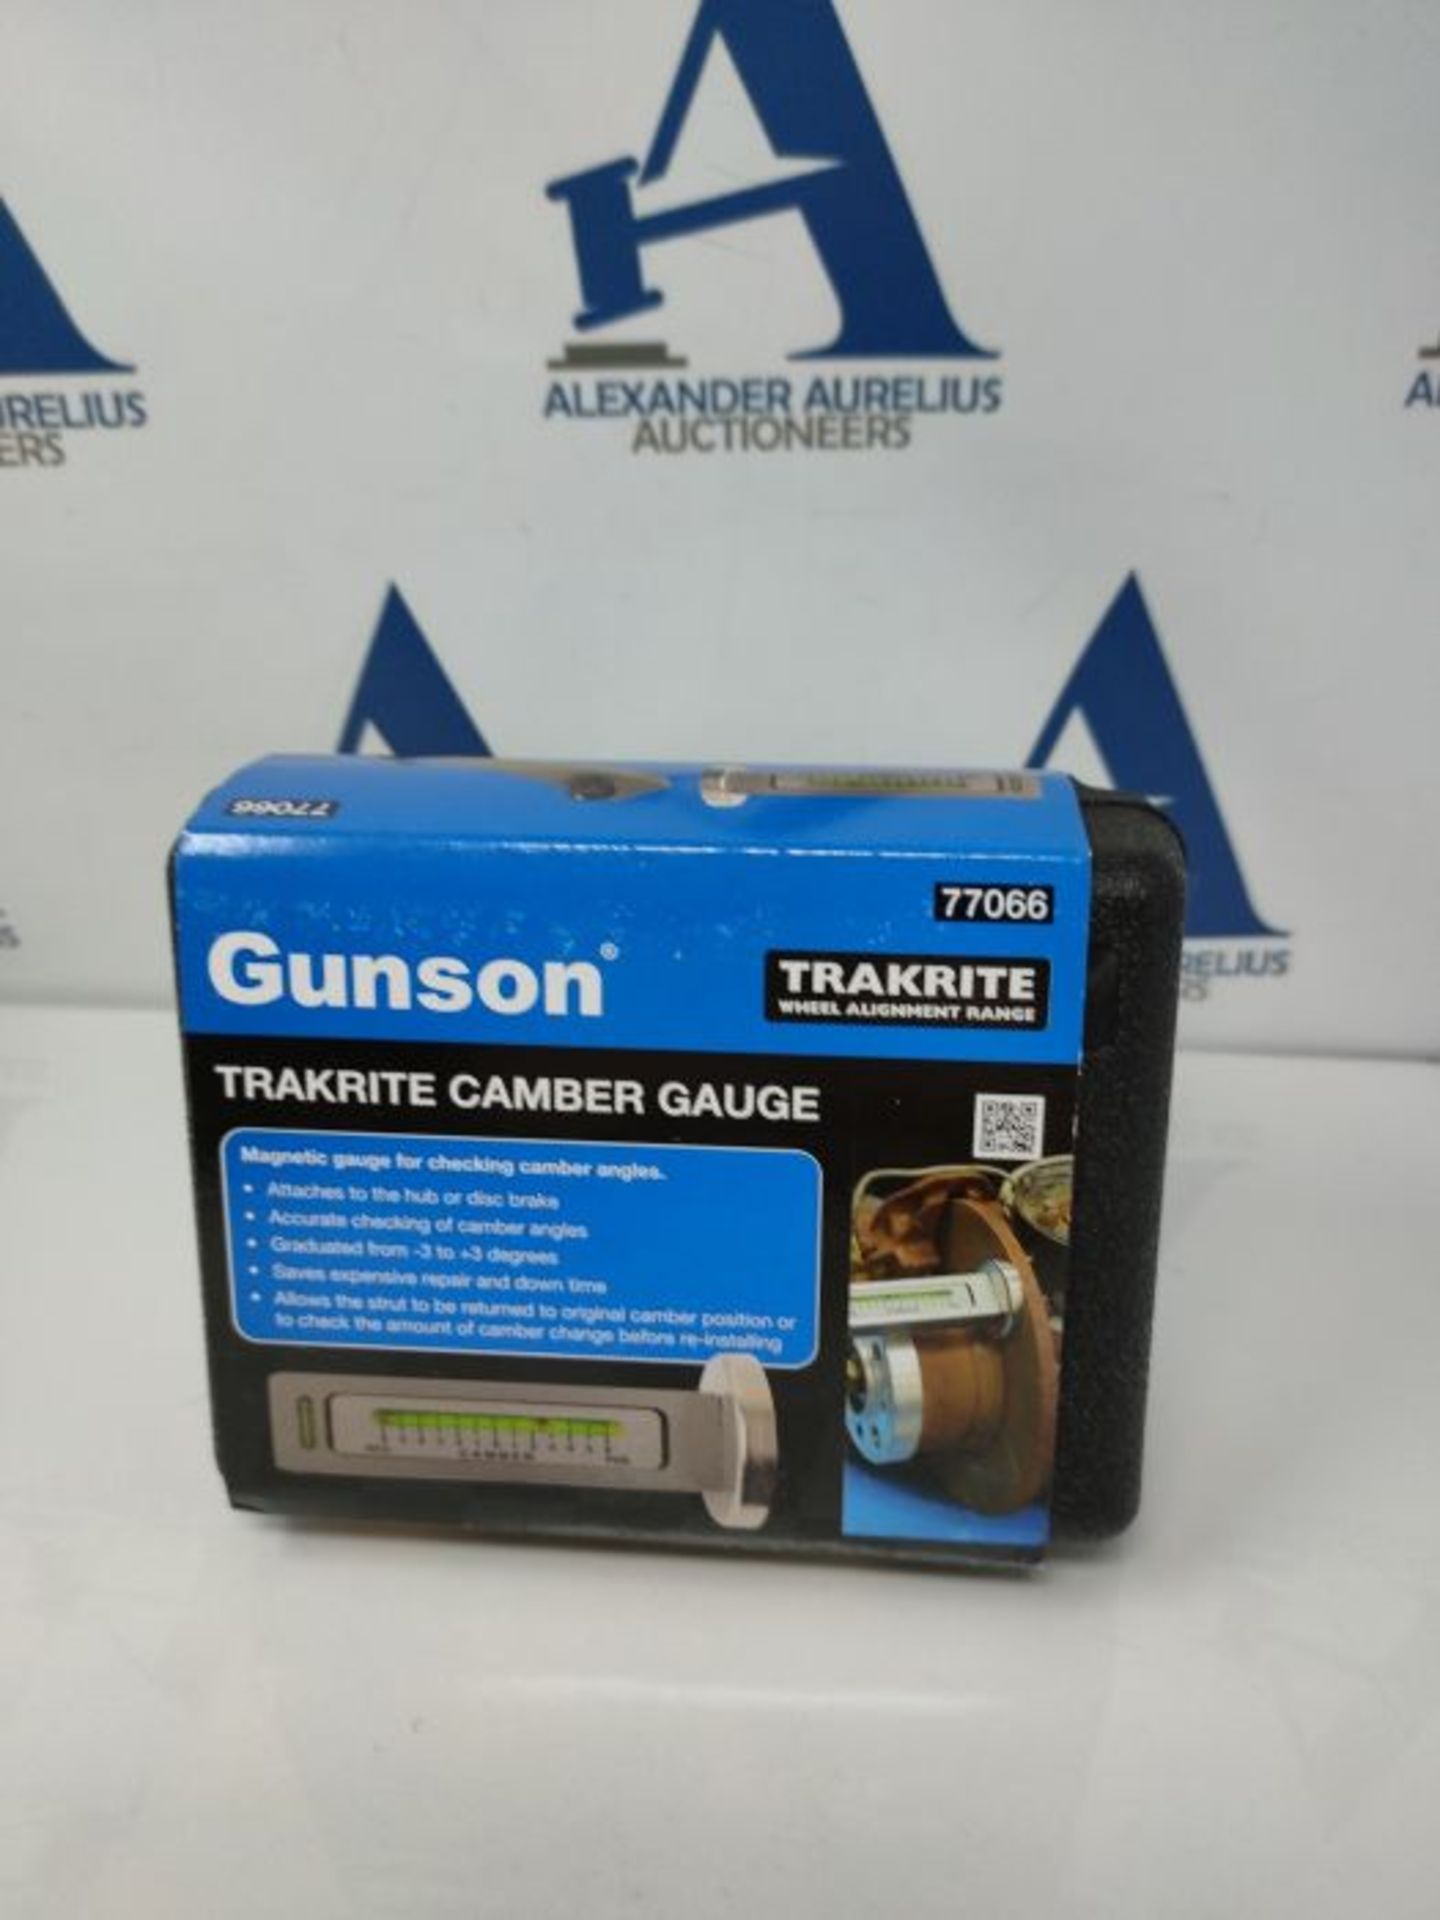 Gunson 77066 Trakrite Camber Gauge - Image 2 of 3